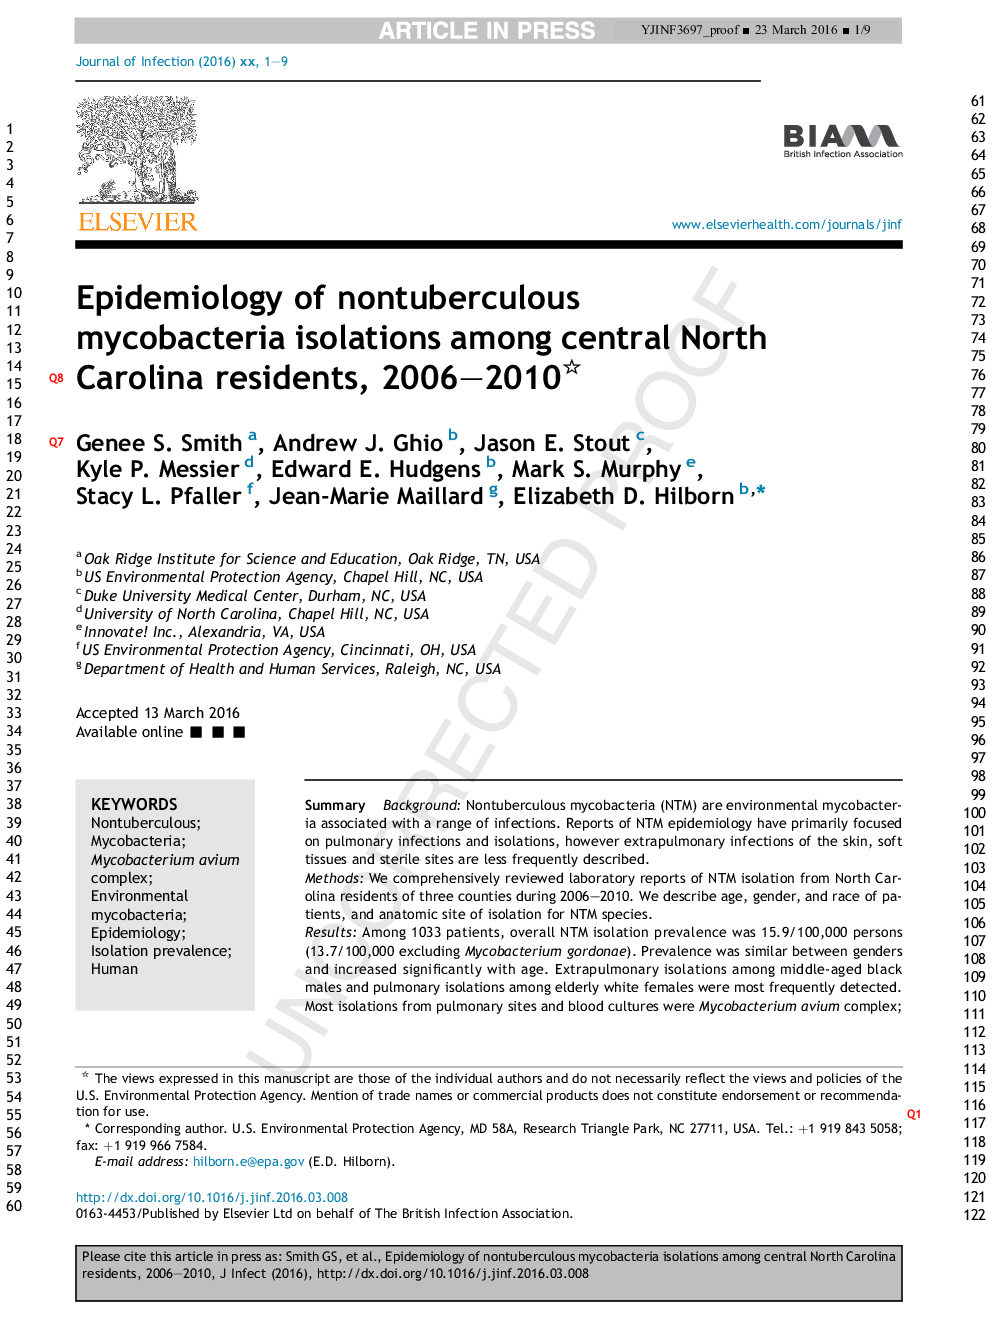 اپیدمیولوژی انزوای میکوباکتریوم غیر انتفاری در میان ساکنان مرکزی کارولینای شمالی، 2006-2010 